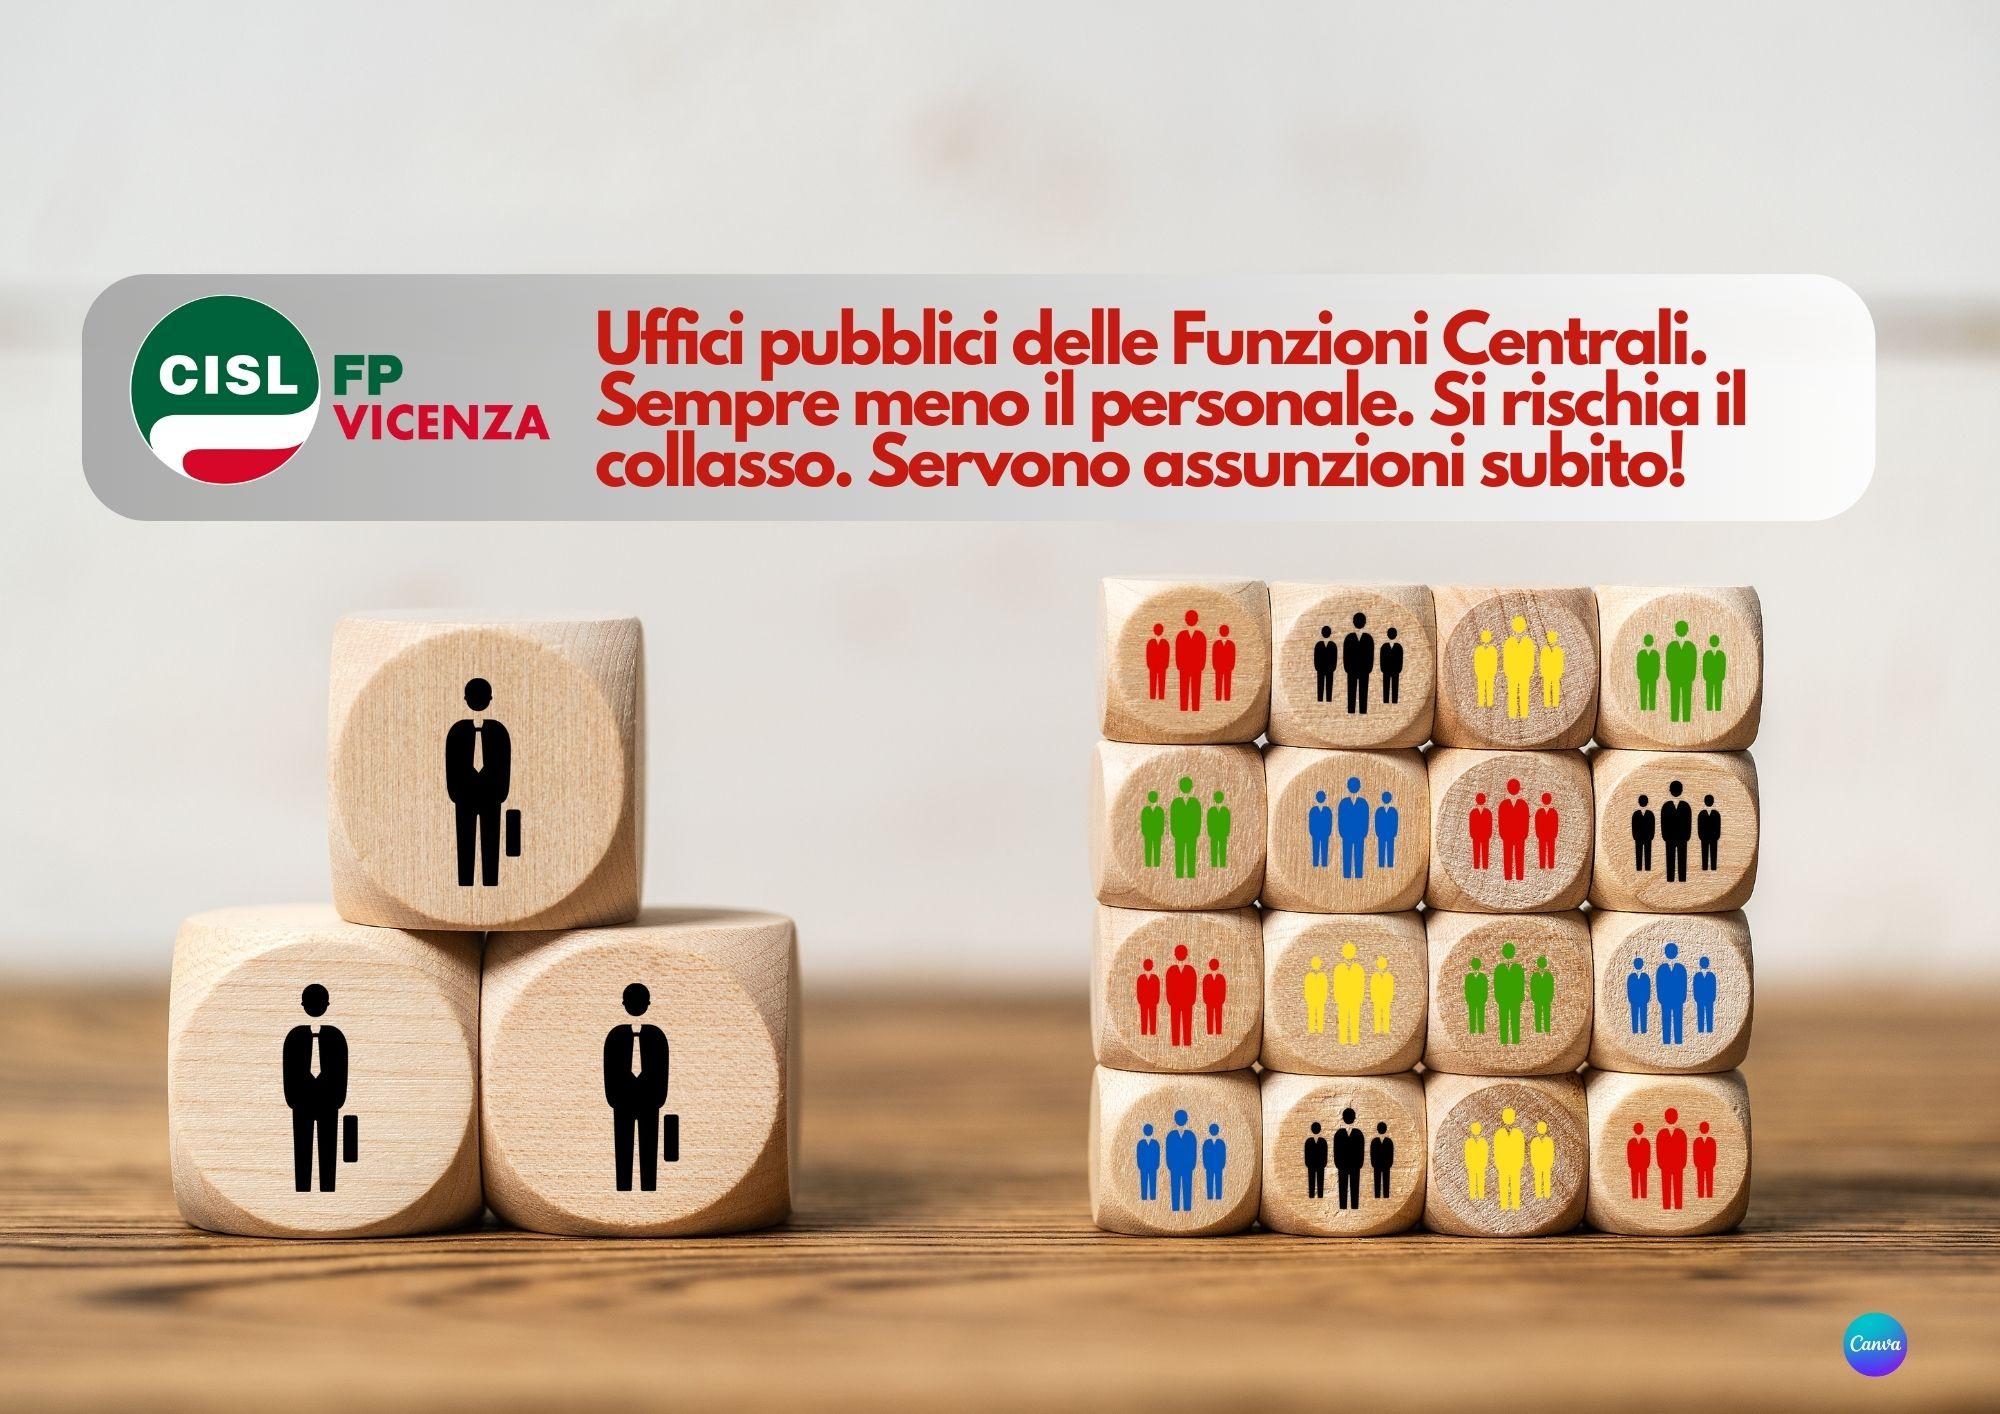 CISL FP Vicenza. Funzioni Centrali. La carenza di personale è insostenibile. Serve un piano assunzioni